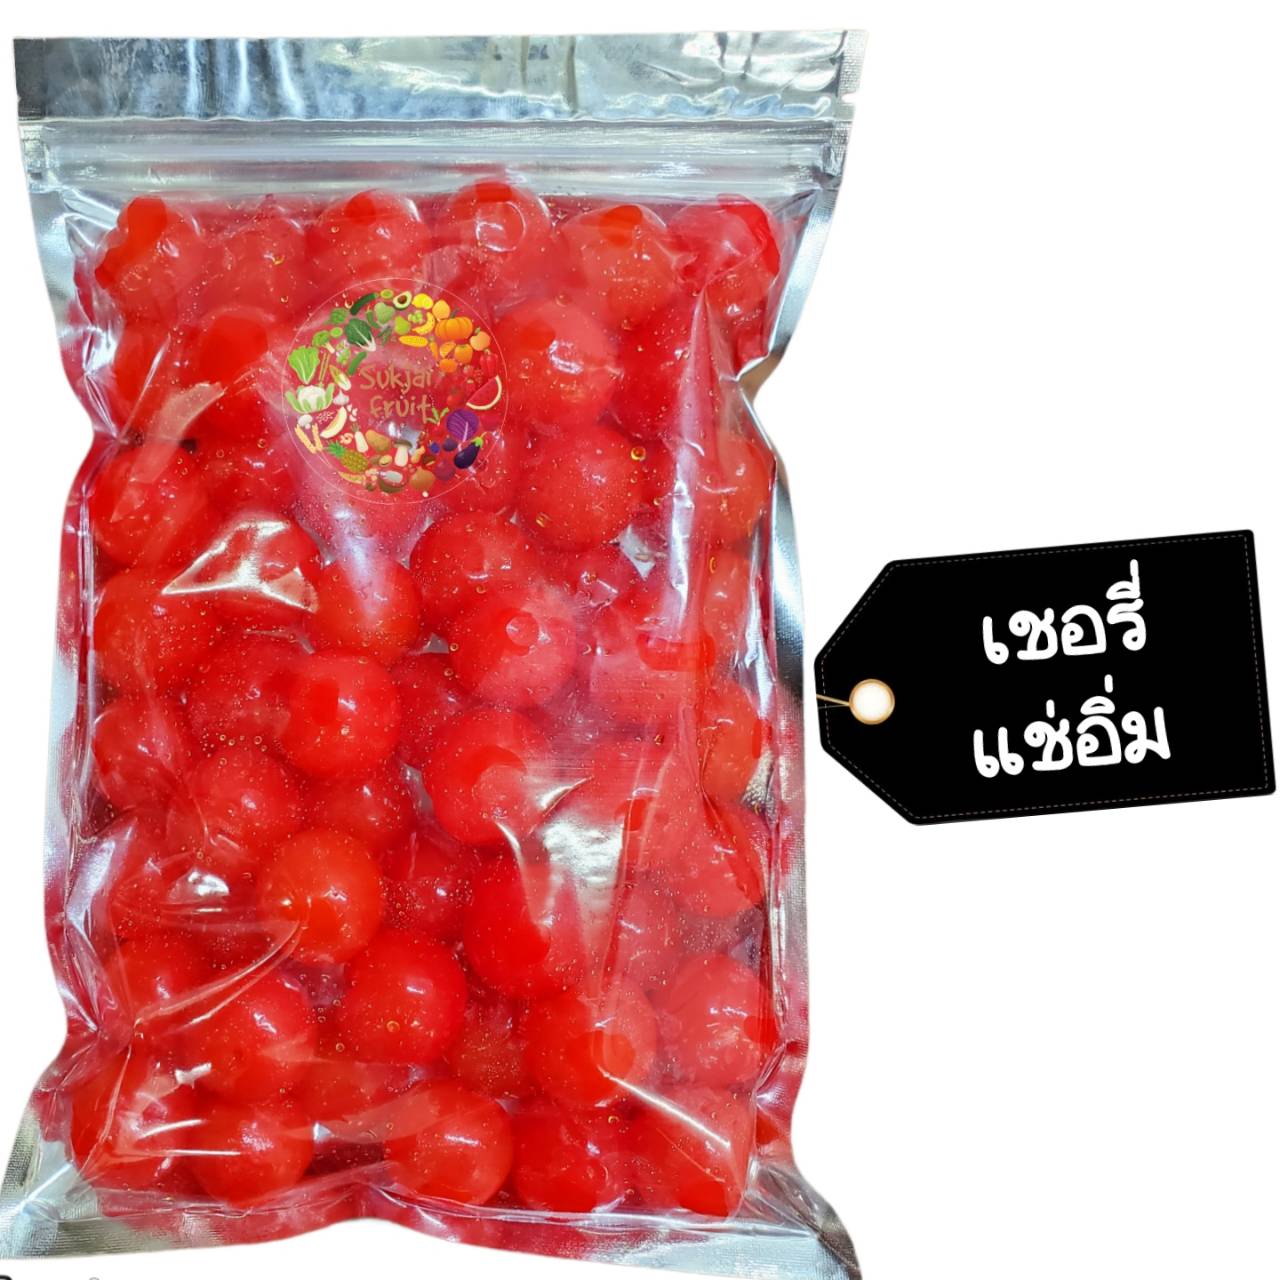 เชอรี่ แดง แช่อิ่ม 105 กรัม - Crystallized red cherry 105 g  - Dried fruit ผลไม้ อบแห้ง ขนมไทย ขนม OTOP เชอรี่แดง ผลไม้อบแห้ง บ๊วย ผลไม้อบแห้ง